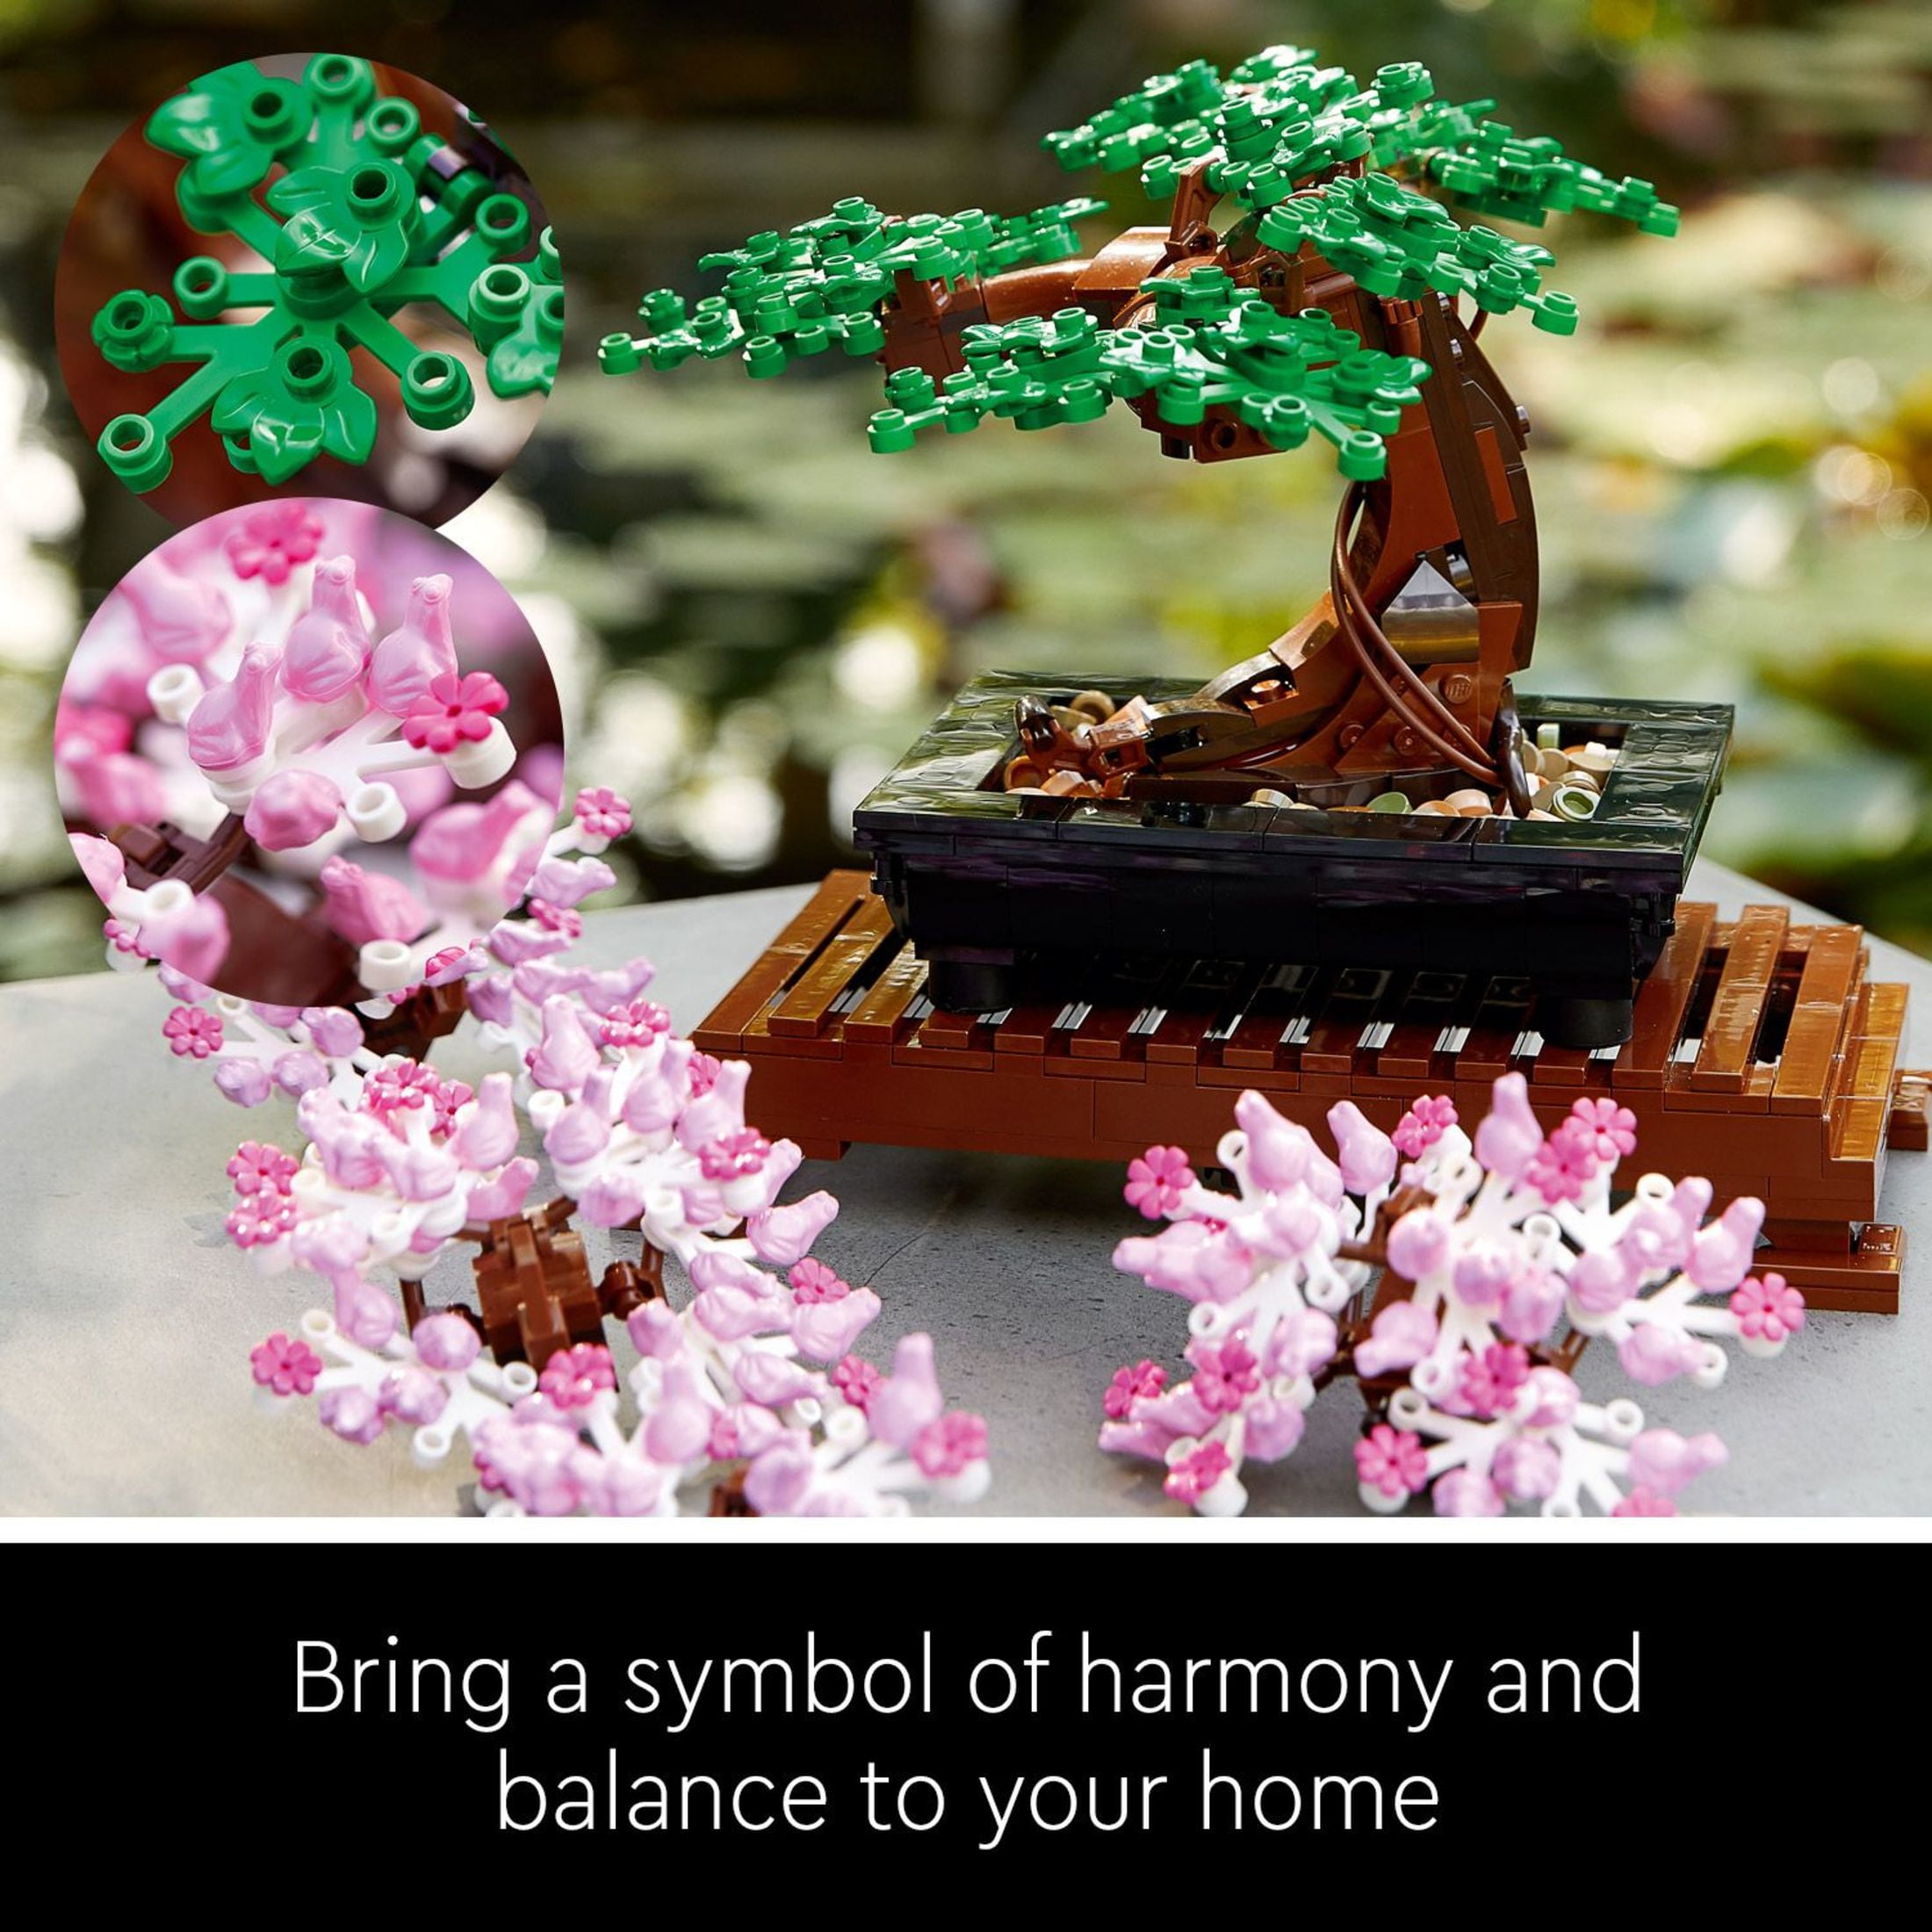 LEGO Botanical Collection: il bonsai ed il mazzo di fiori nella nuova linea  18+